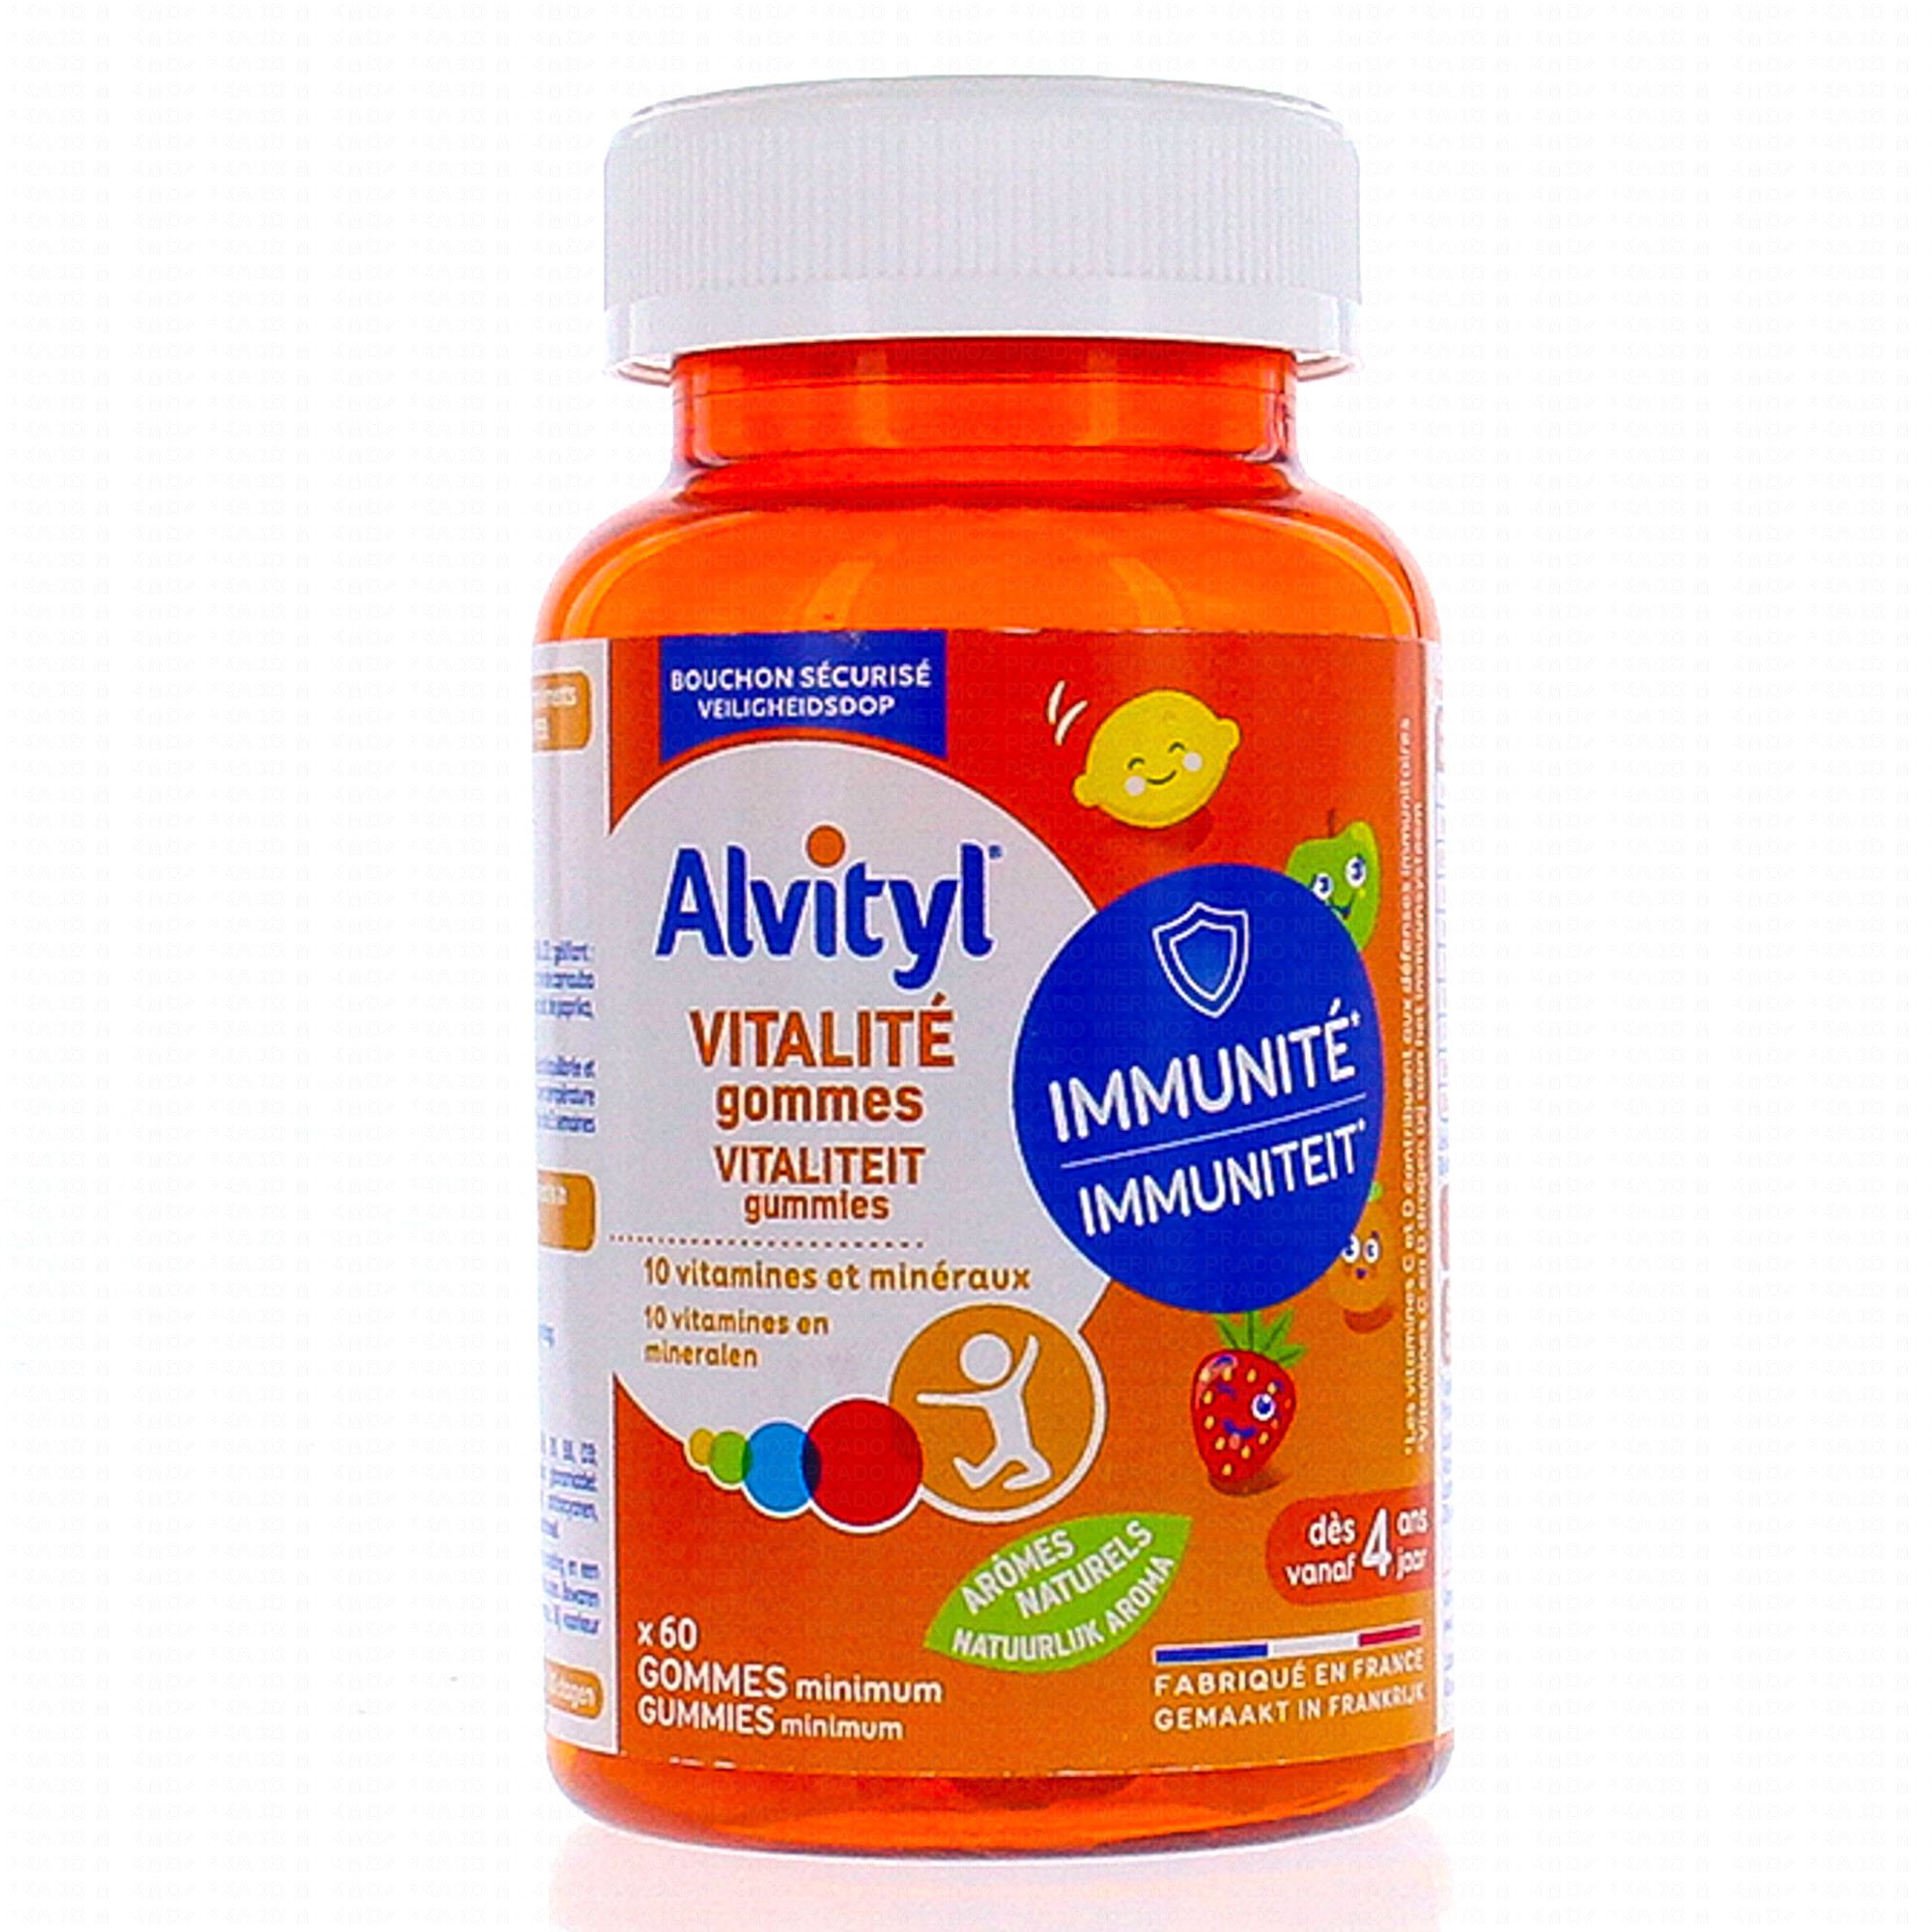 ALVITYL Vitalité - Gummies vitalité et minéraux goût citron, pomme